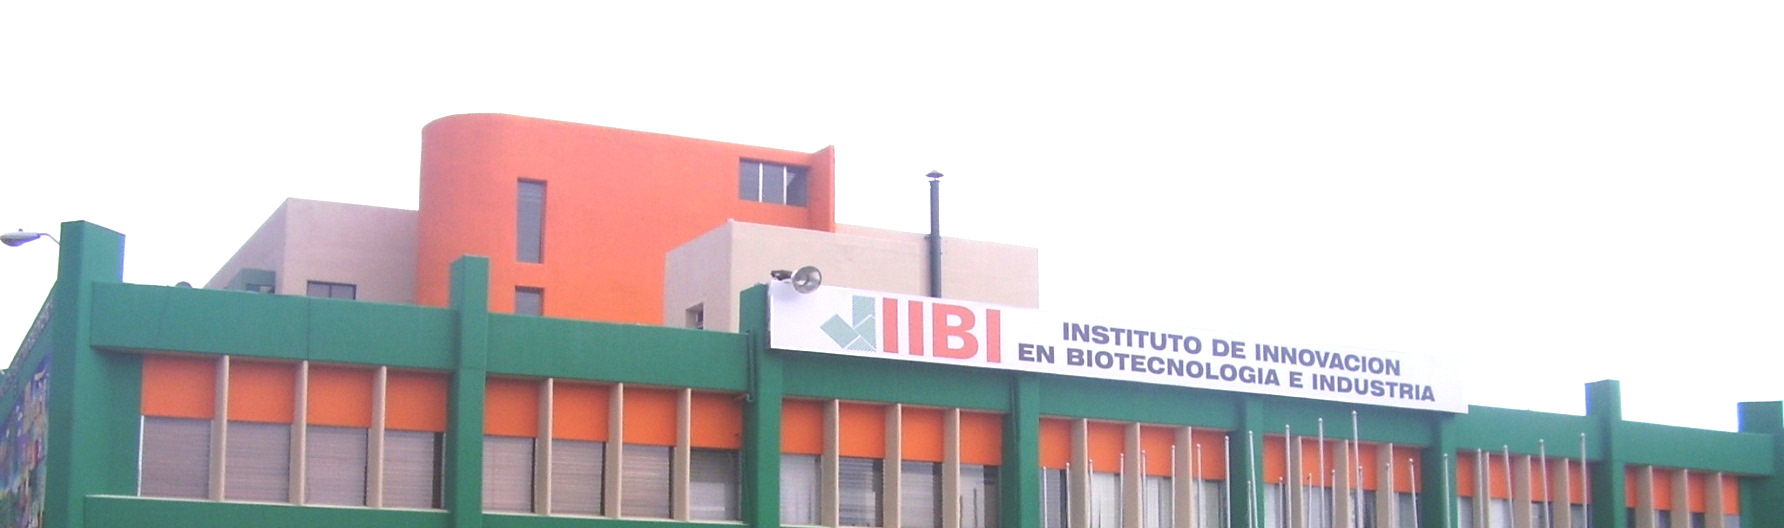 Instituto de Innovación en Biotecnología e Industria (IIBI), Proceso de Implementación del Sistema de Gestión de la Calidad, Santo